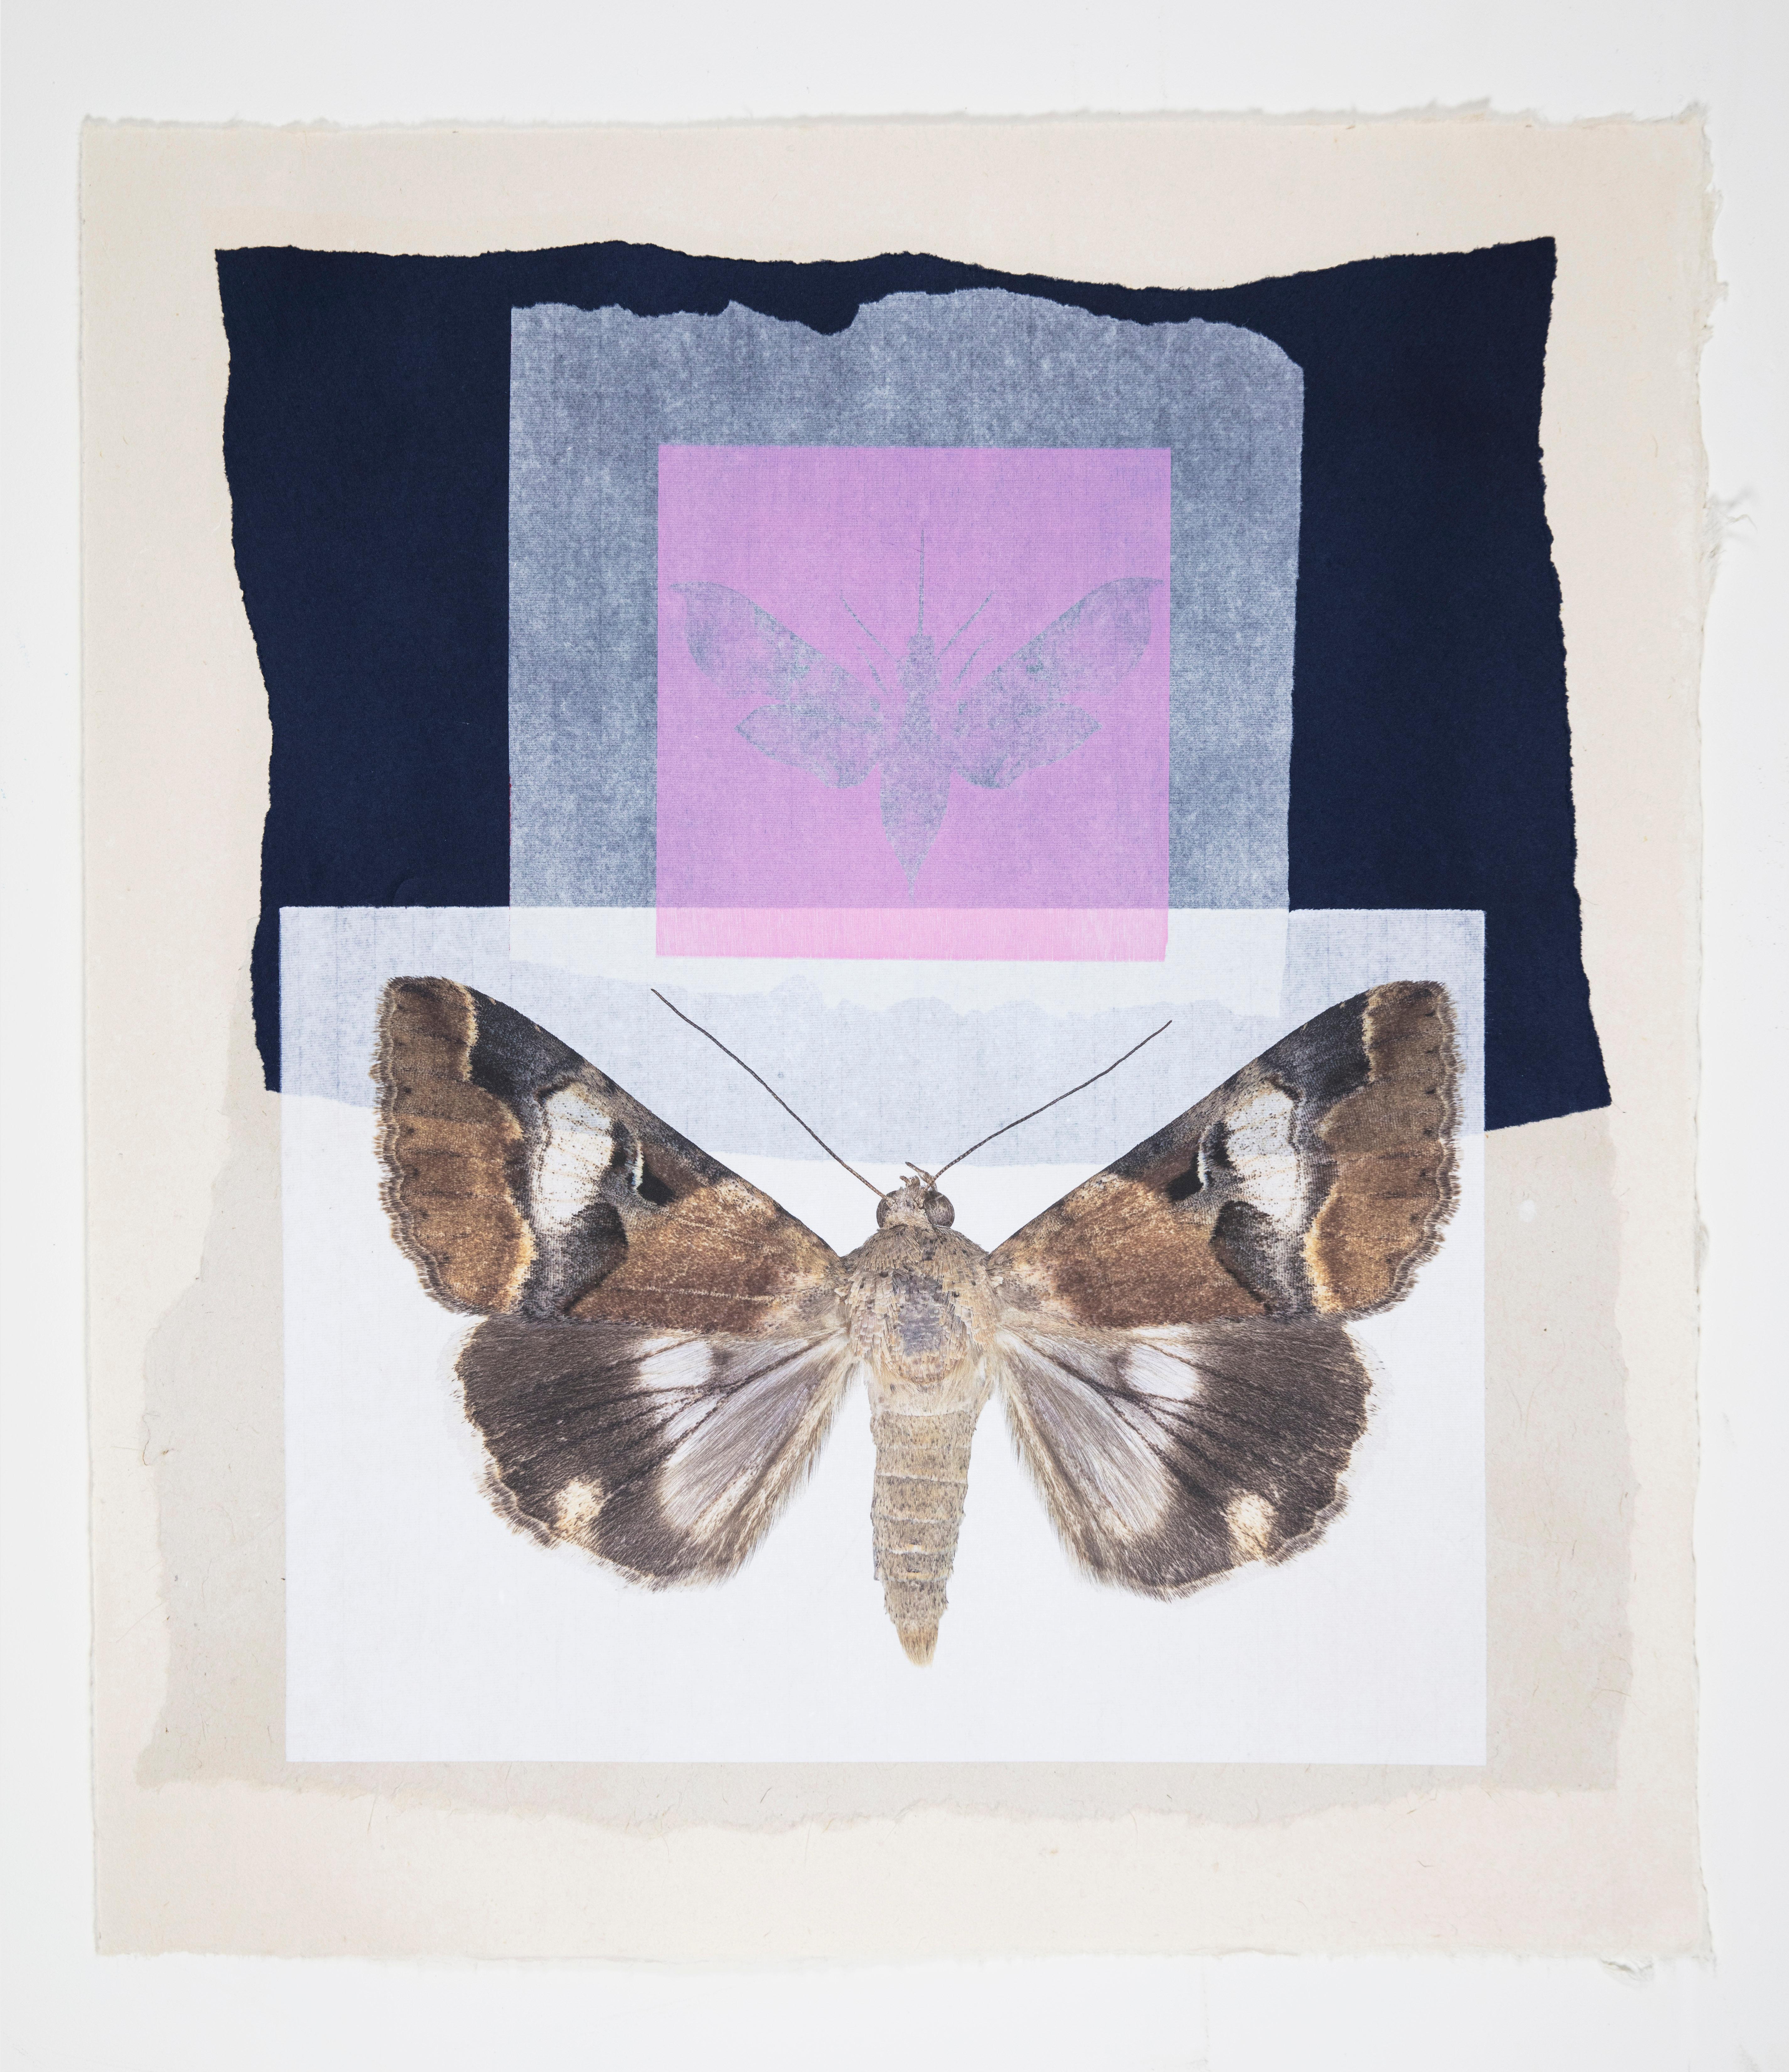 Monotype contemporain encadré d'un collage de motifs papillons et de motifs naturels roses et bleus